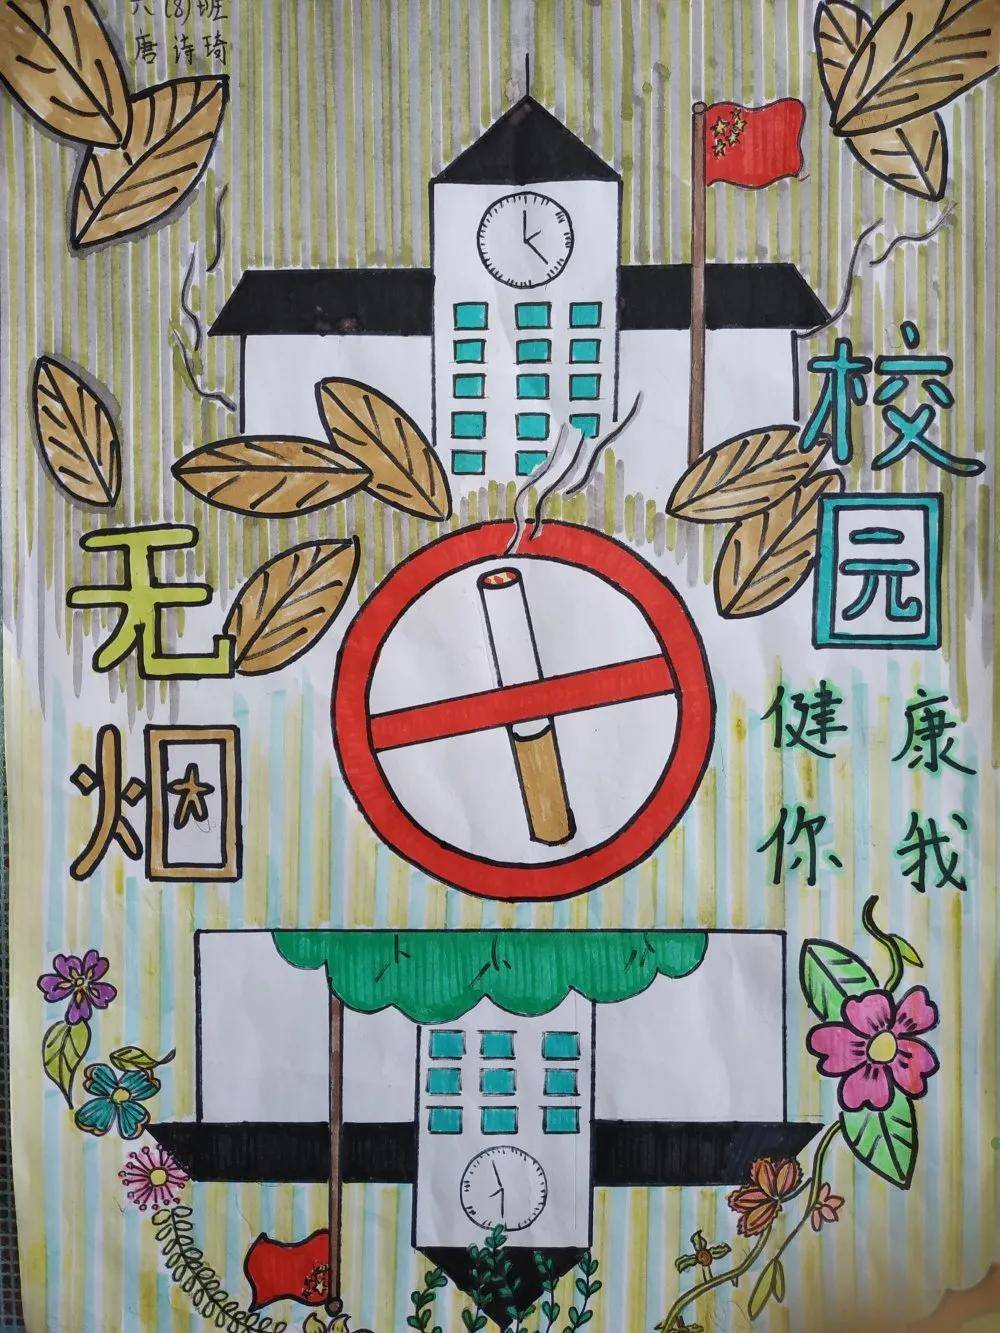 打造无烟校园 倡导健康生活——桂林市平山小学开展"无烟校园"系列